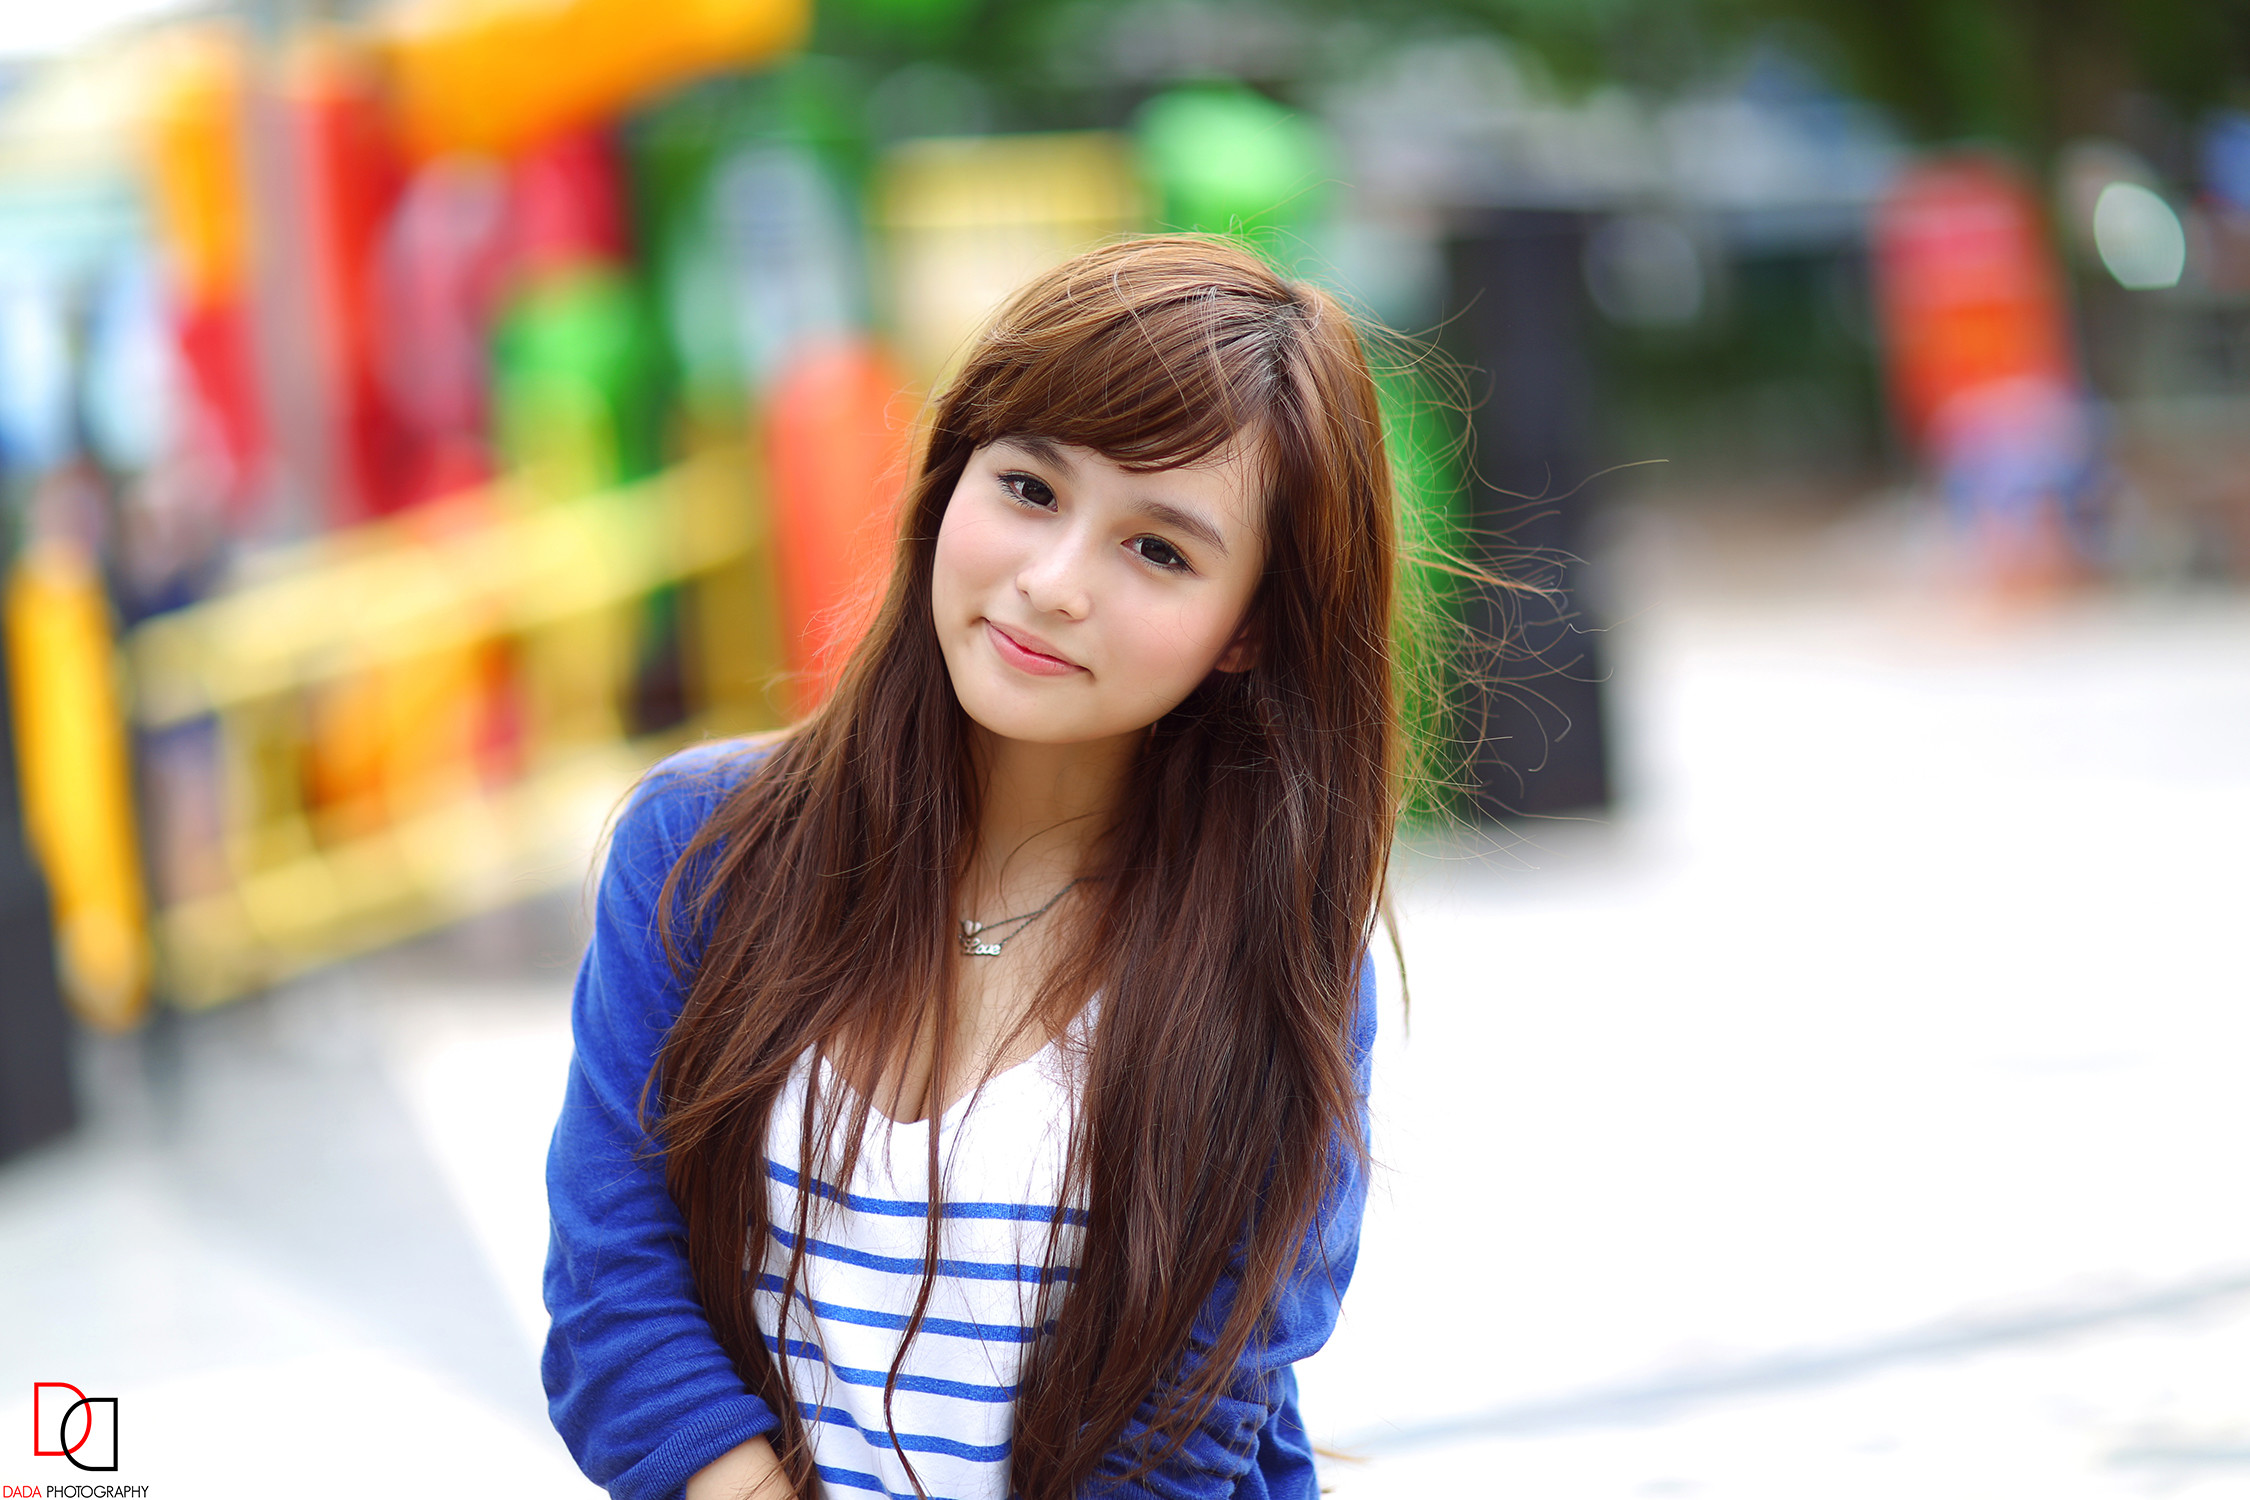 Hot Cute Asian Girl Wallpapers Full Hd Free Download - Rl Video Door Phone  - 2250x1500 Wallpaper 